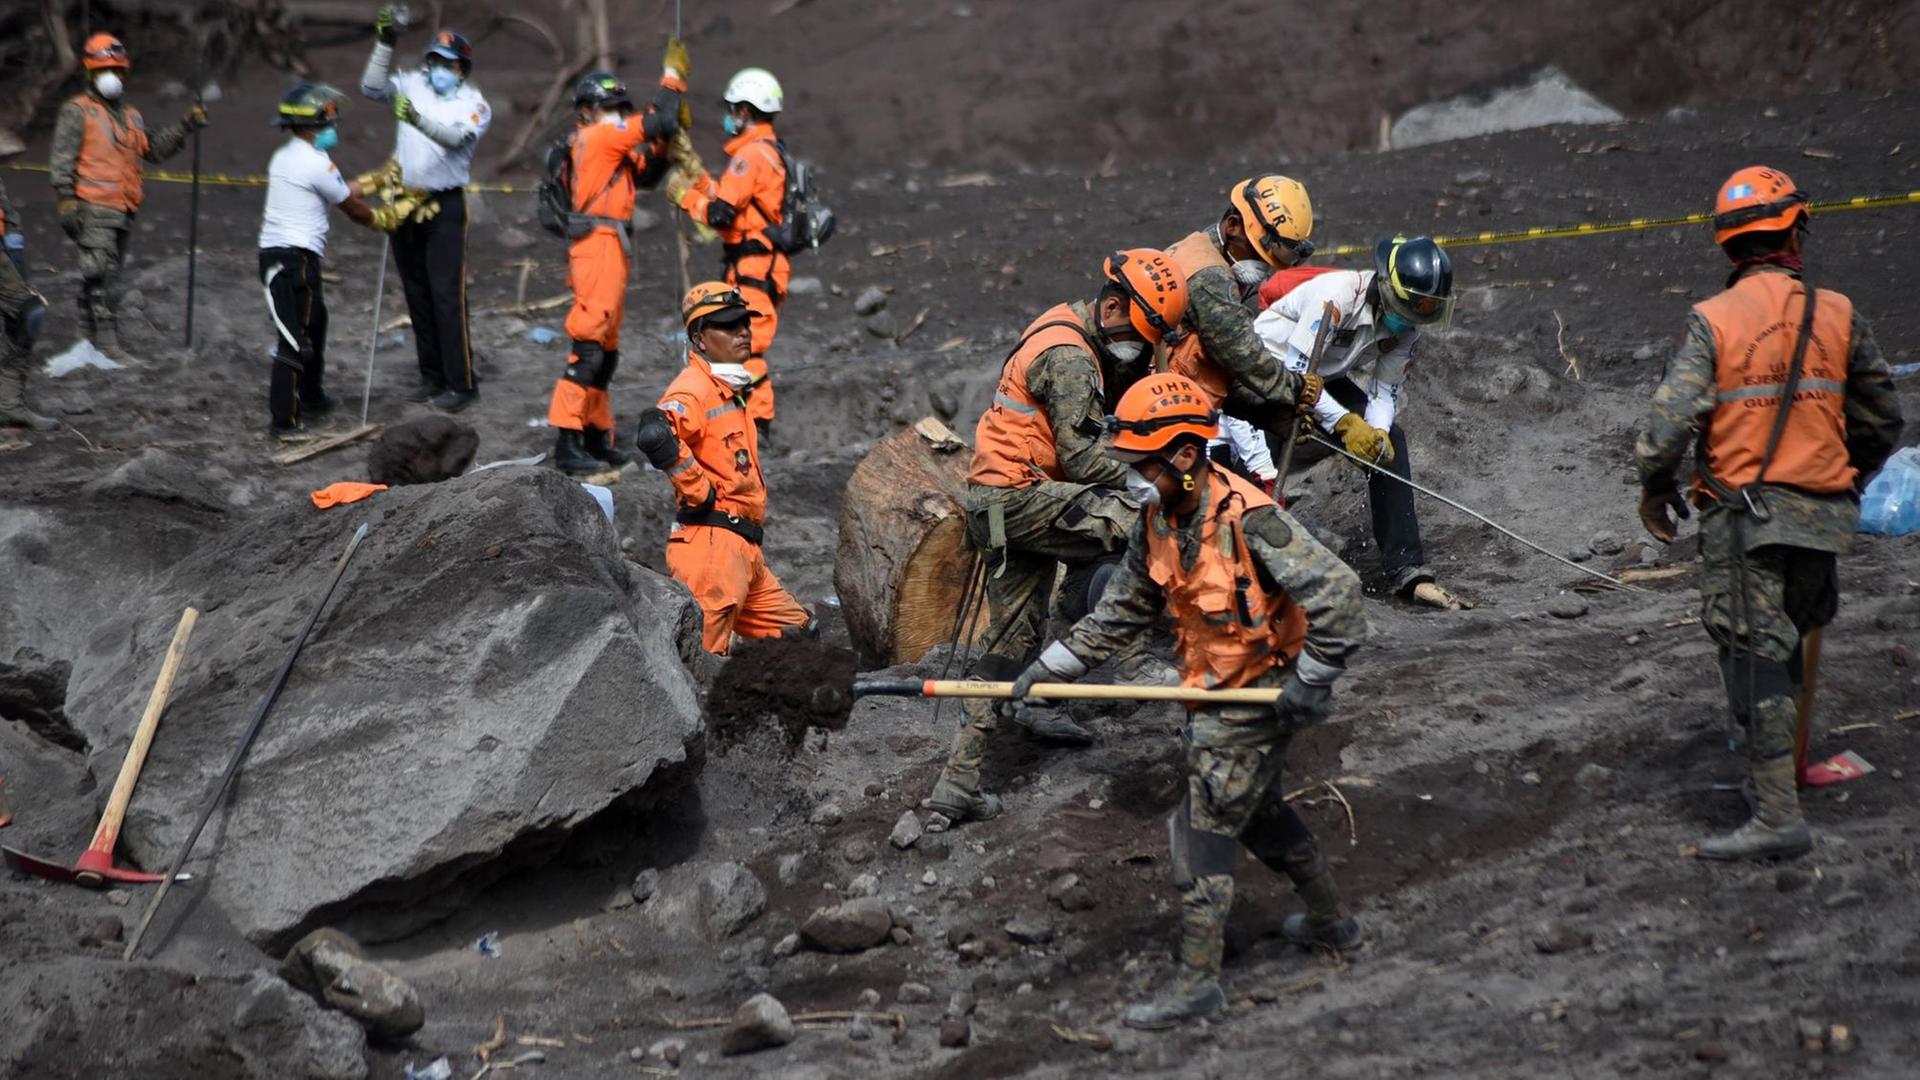  Freiwillige und Feuerwehr-Leute suchen in der Asche nach Überlebenden und Opfern.